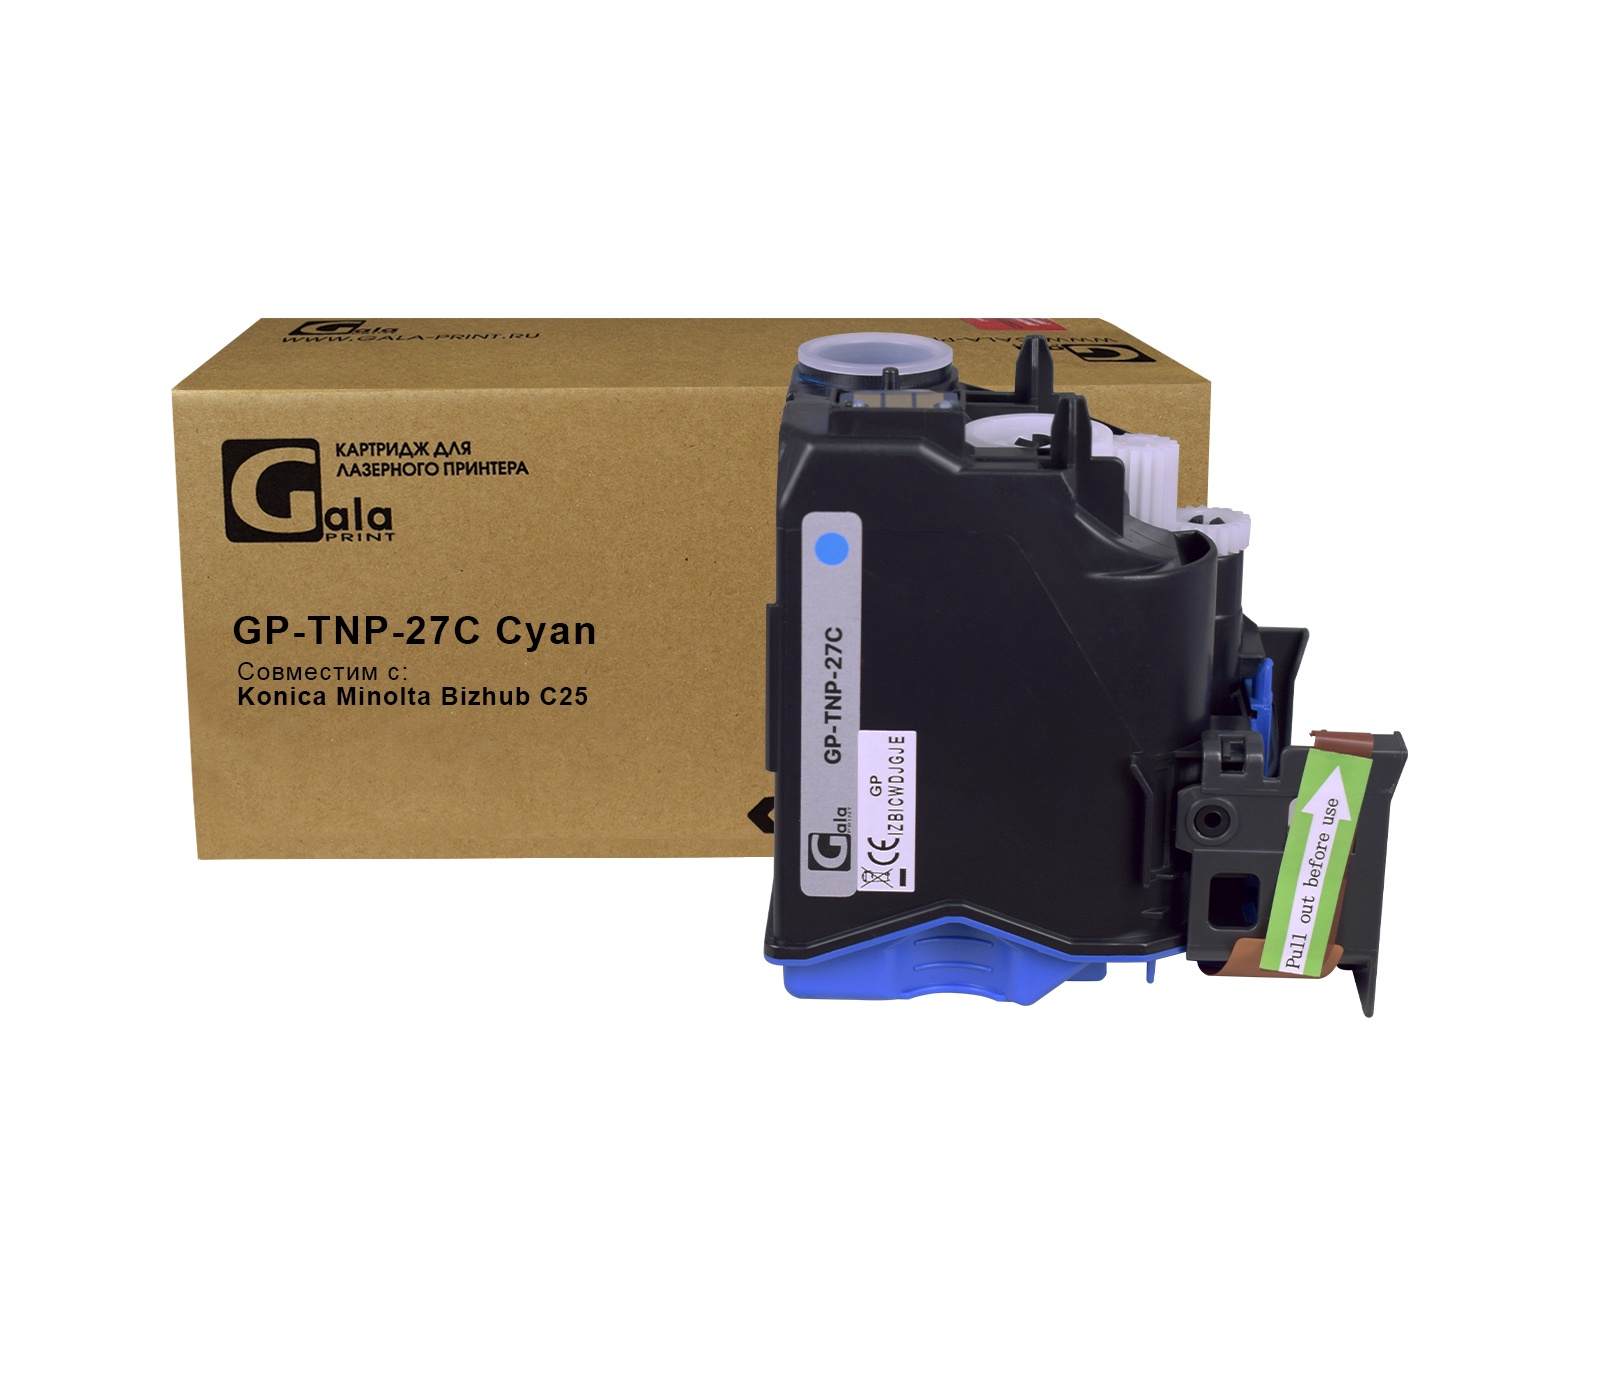 Картридж GP-TNP-27C для принтеров Konica Minolta Bizhub C25 Cyan 6000 копий GalaPrint